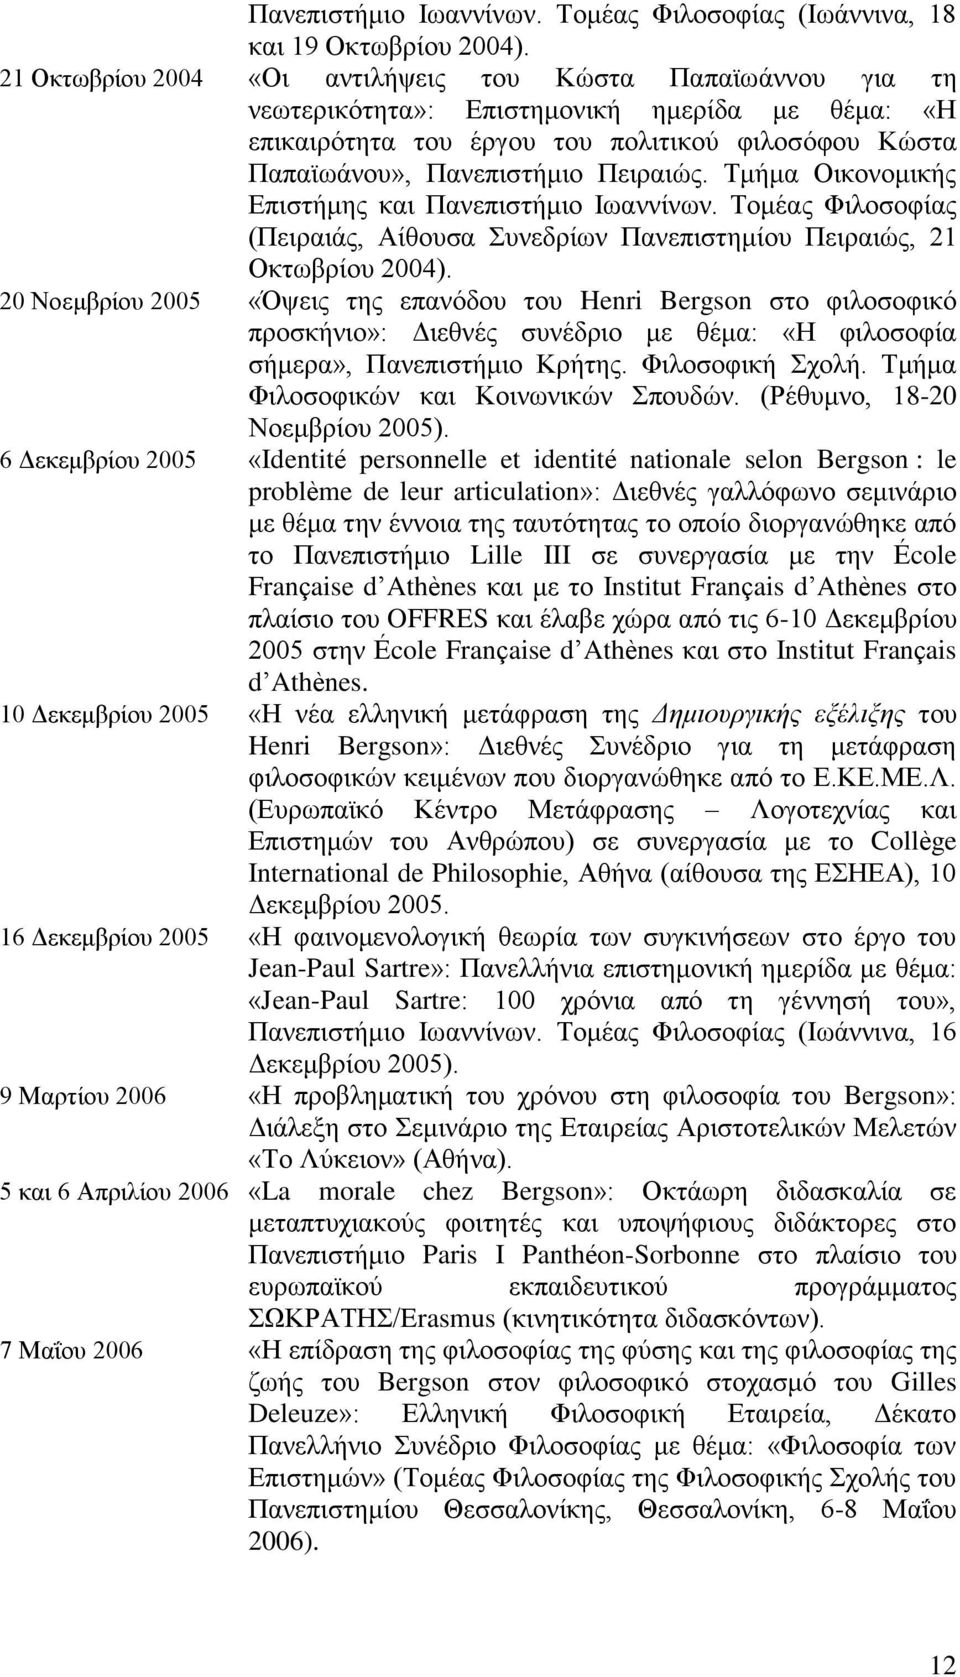 Τμήμα Οικονομικής Επιστήμης και Πανεπιστήμιο Ιωαννίνων. Τομέας Φιλοσοφίας (Πειραιάς, Αίθουσα Συνεδρίων Πανεπιστημίου Πειραιώς, 21 Οκτωβρίου 2004).